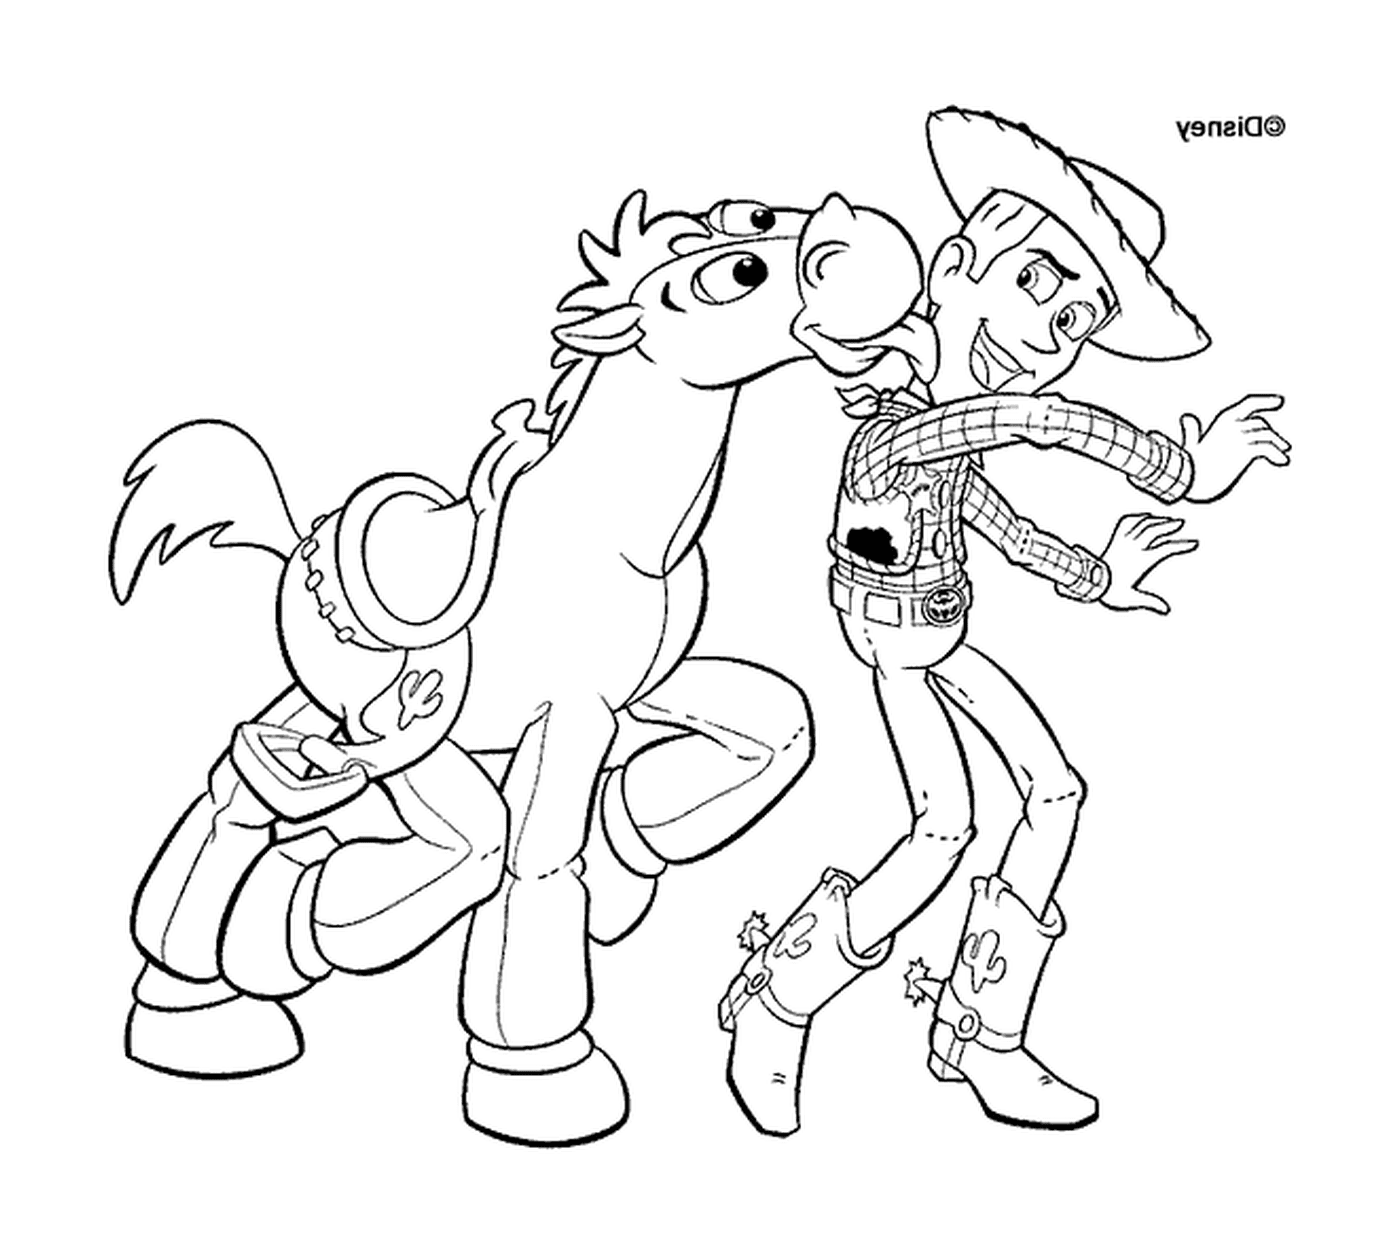  Woody e il suo cavallo, duo inseparabile 